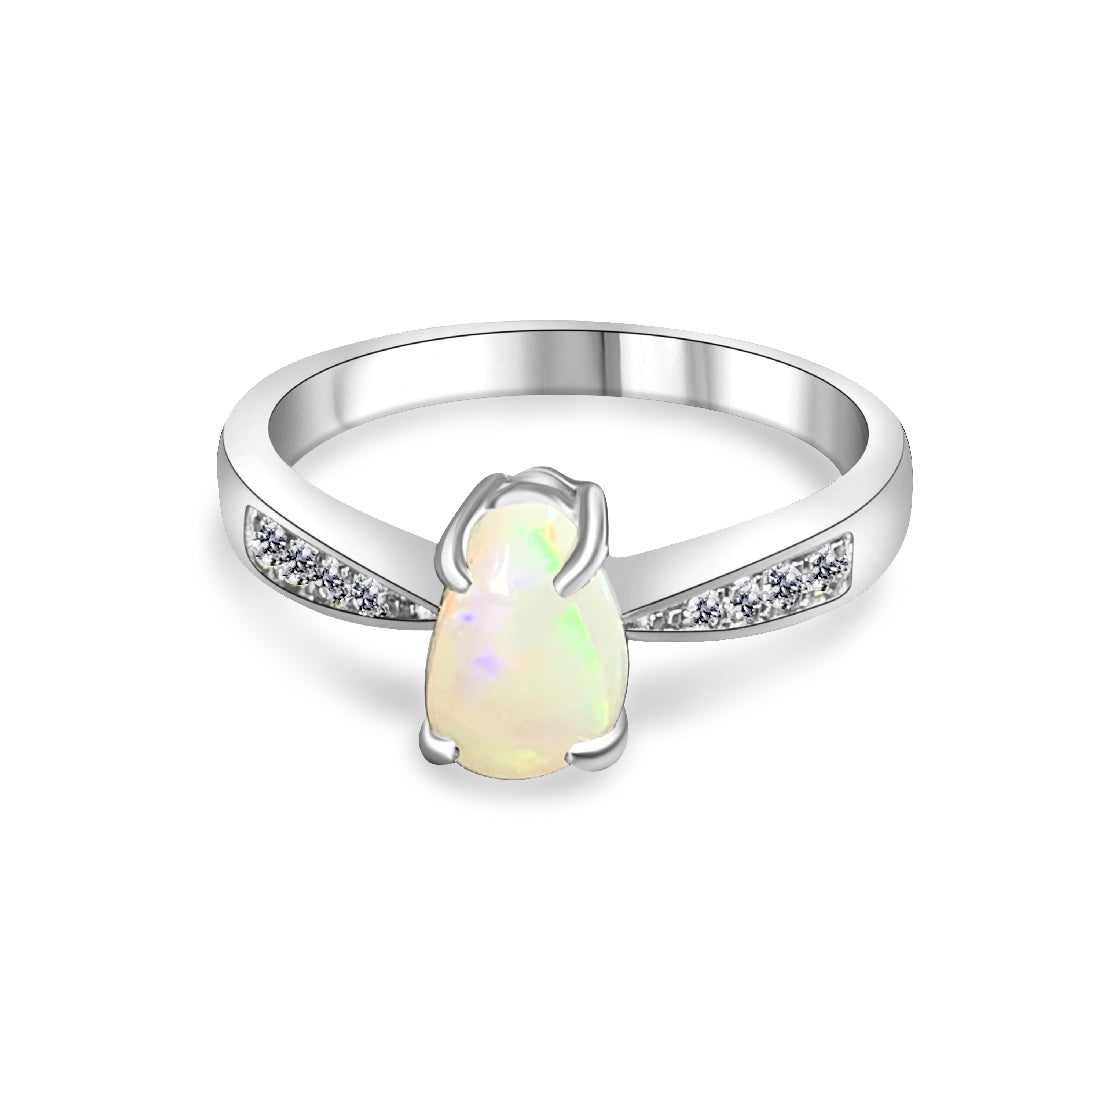 Sterling Silver White Opal 7.2x4.8mm ring - Masterpiece Jewellery Opal & Gems Sydney Australia | Online Shop